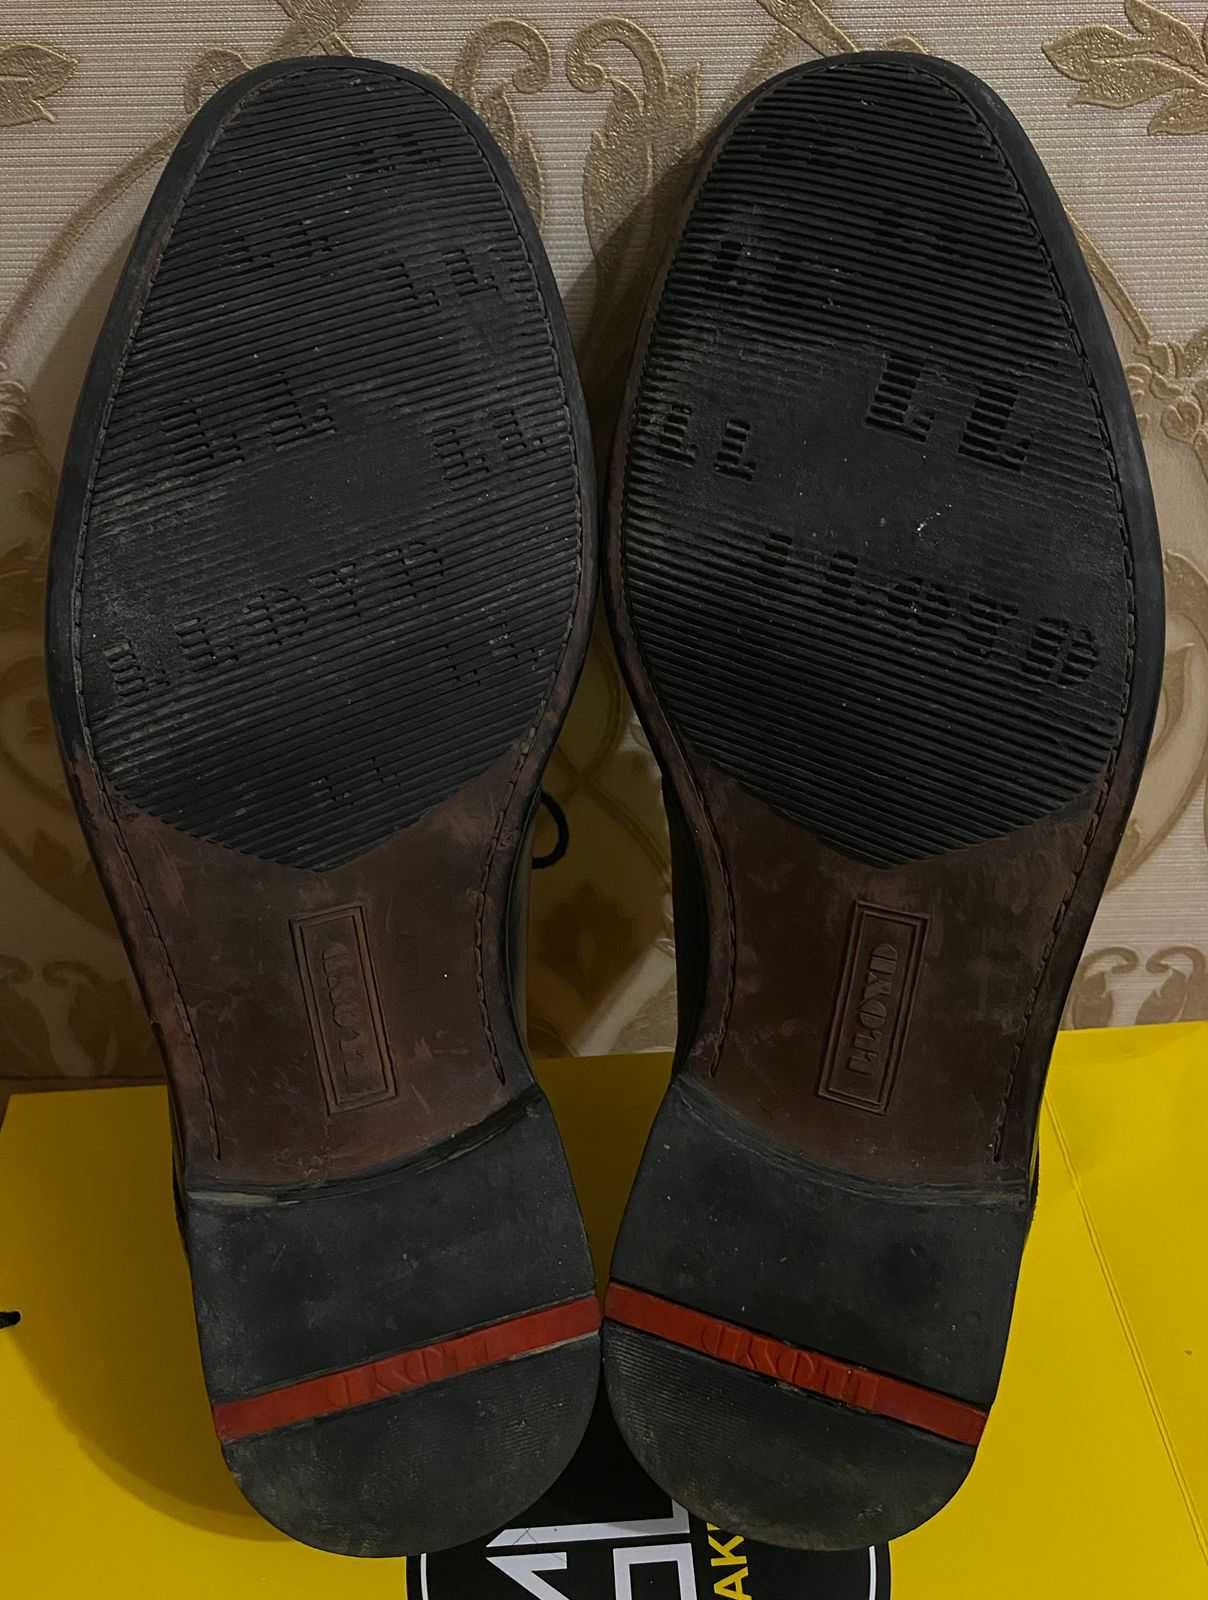 Оригинальная кожаная обувь от "Lloyd" Galant на 41 размер.